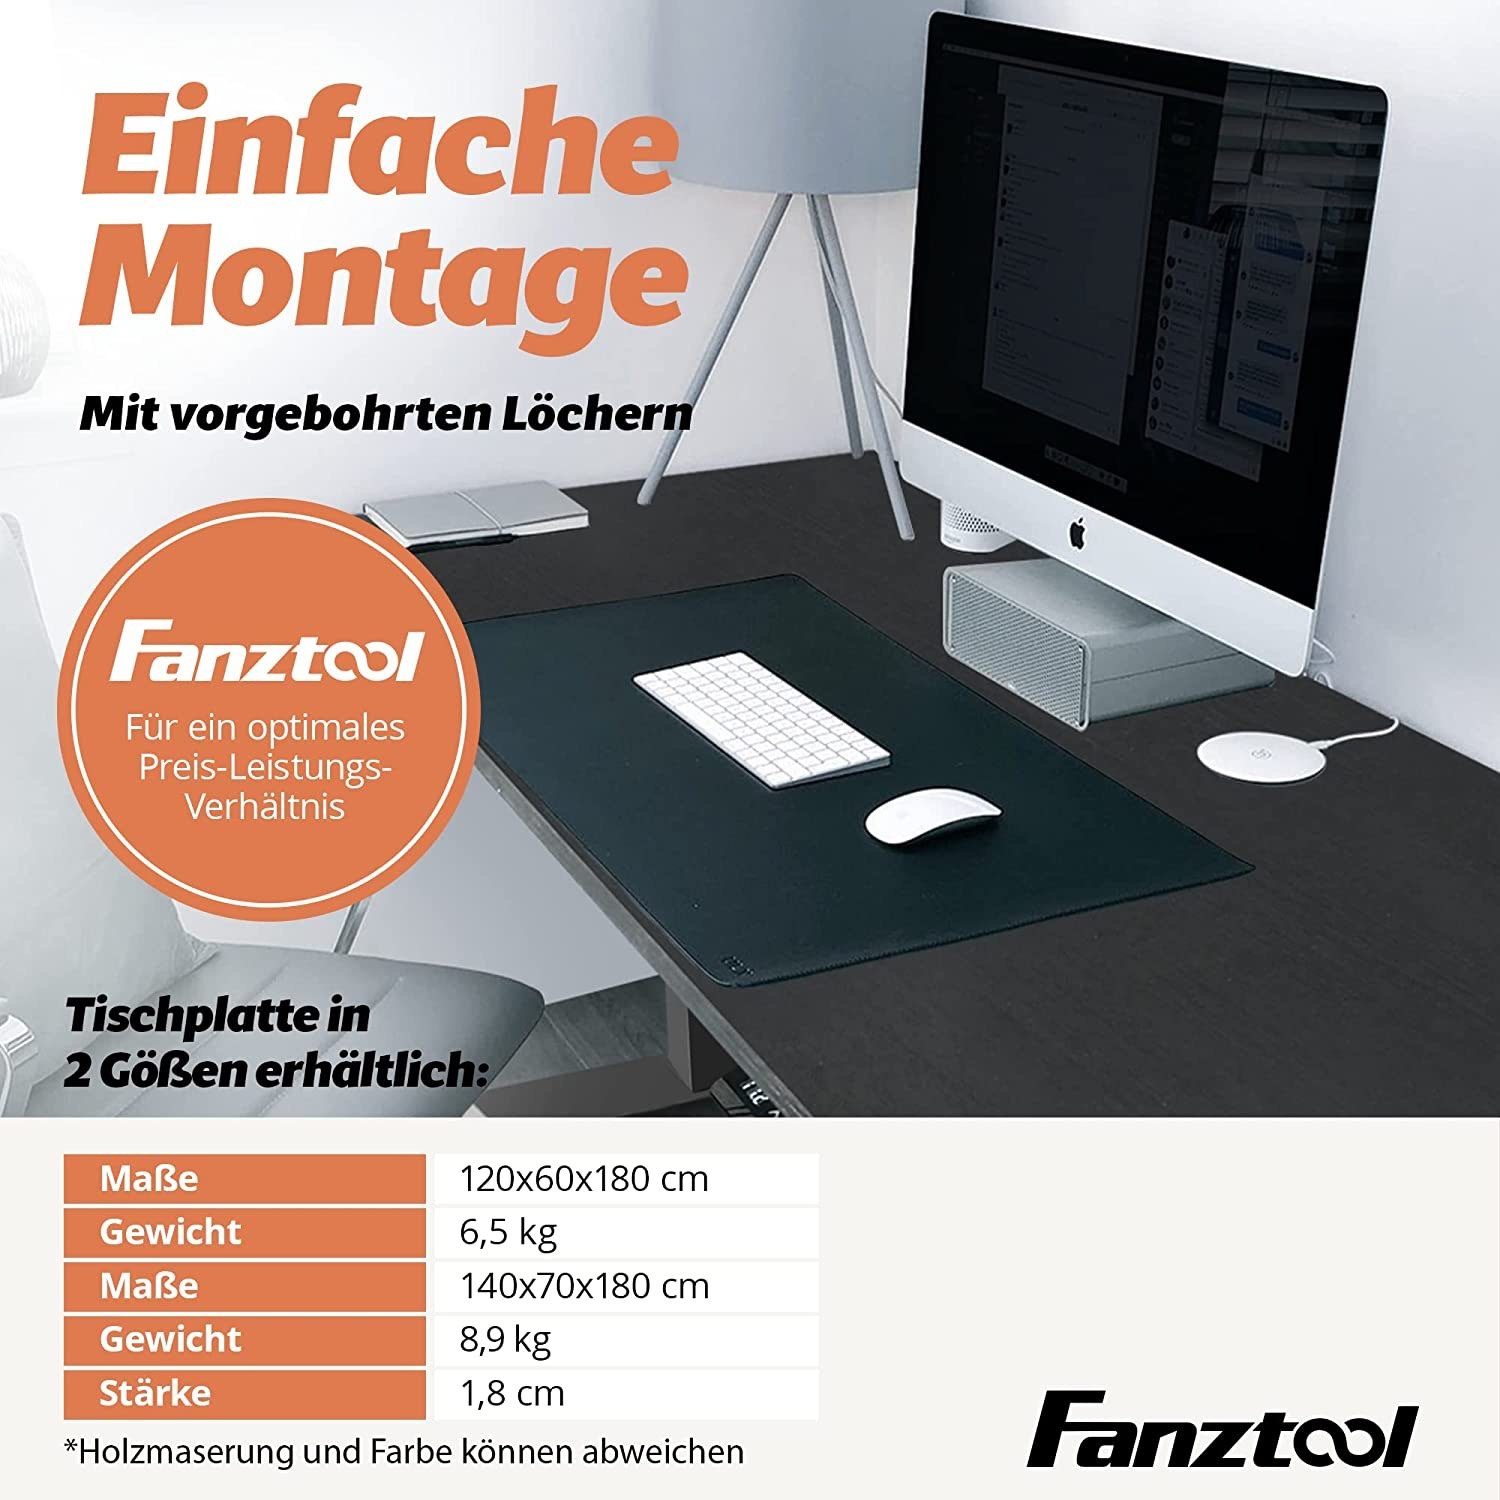 FANZTOOL Tischplatte Fanztool Tischplatte Schwarz